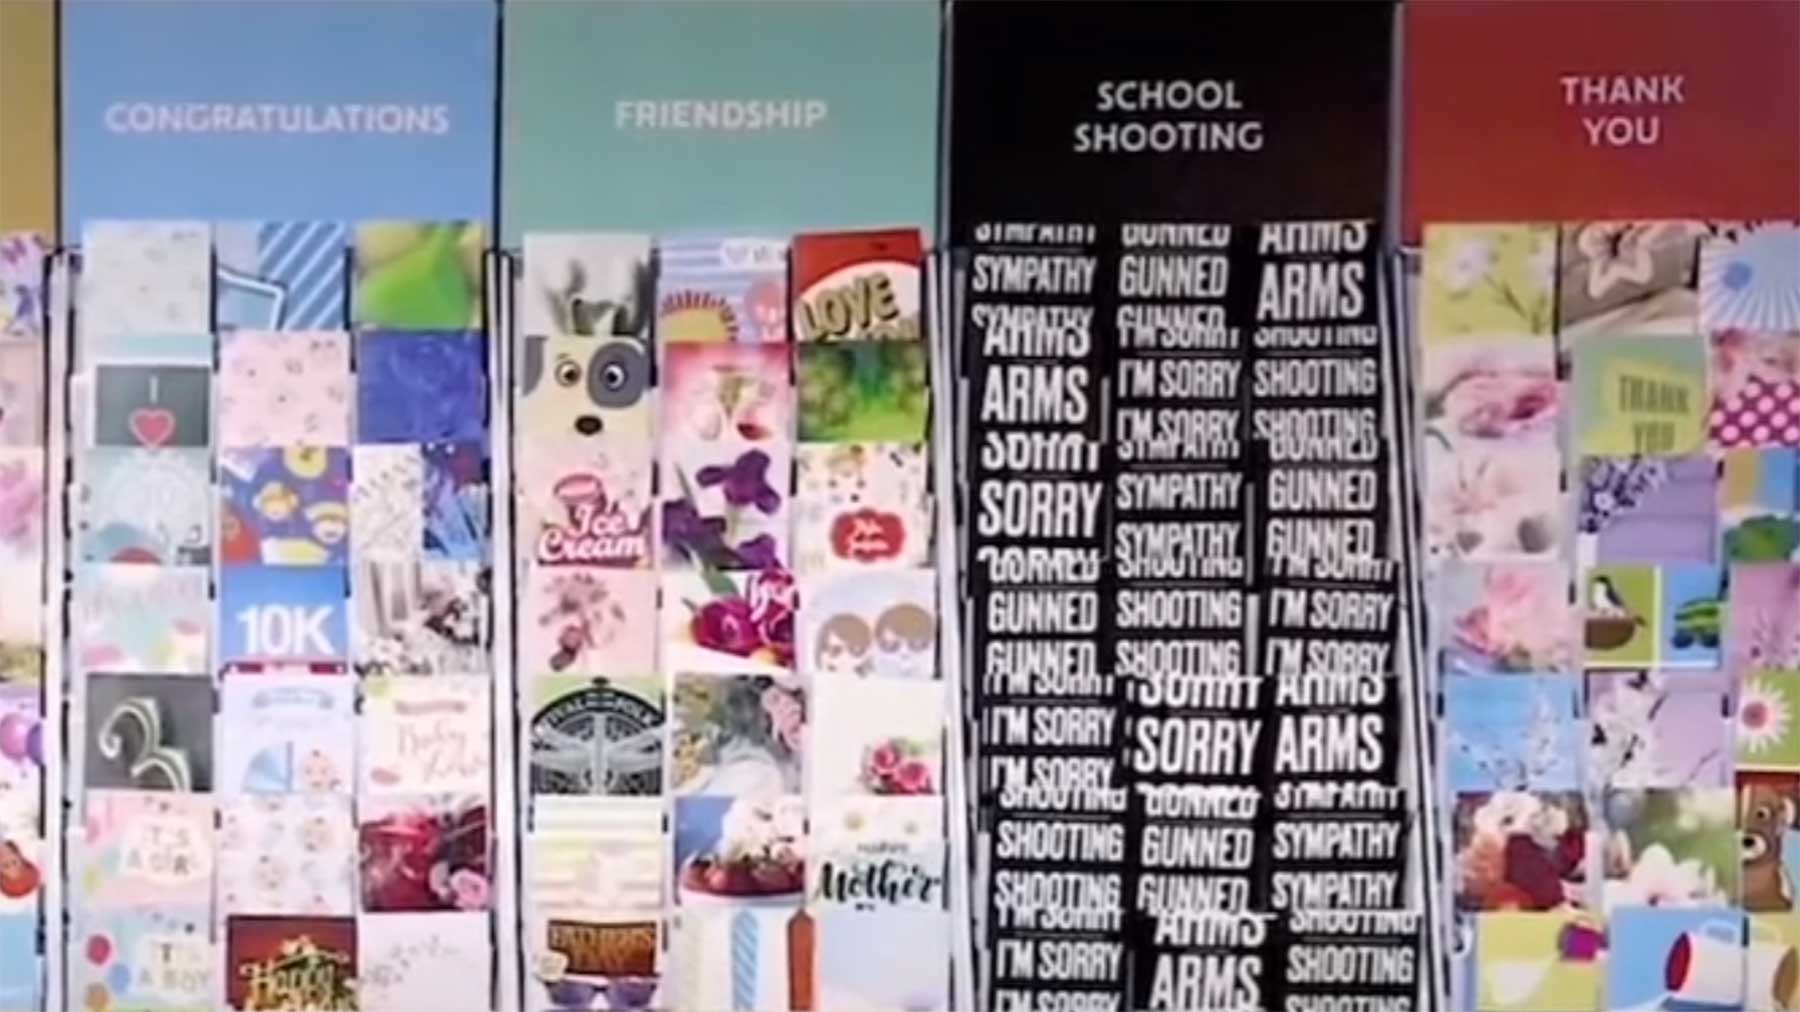 Kunstinstallation bietet Beileidskarten für Schul-Schießereien an